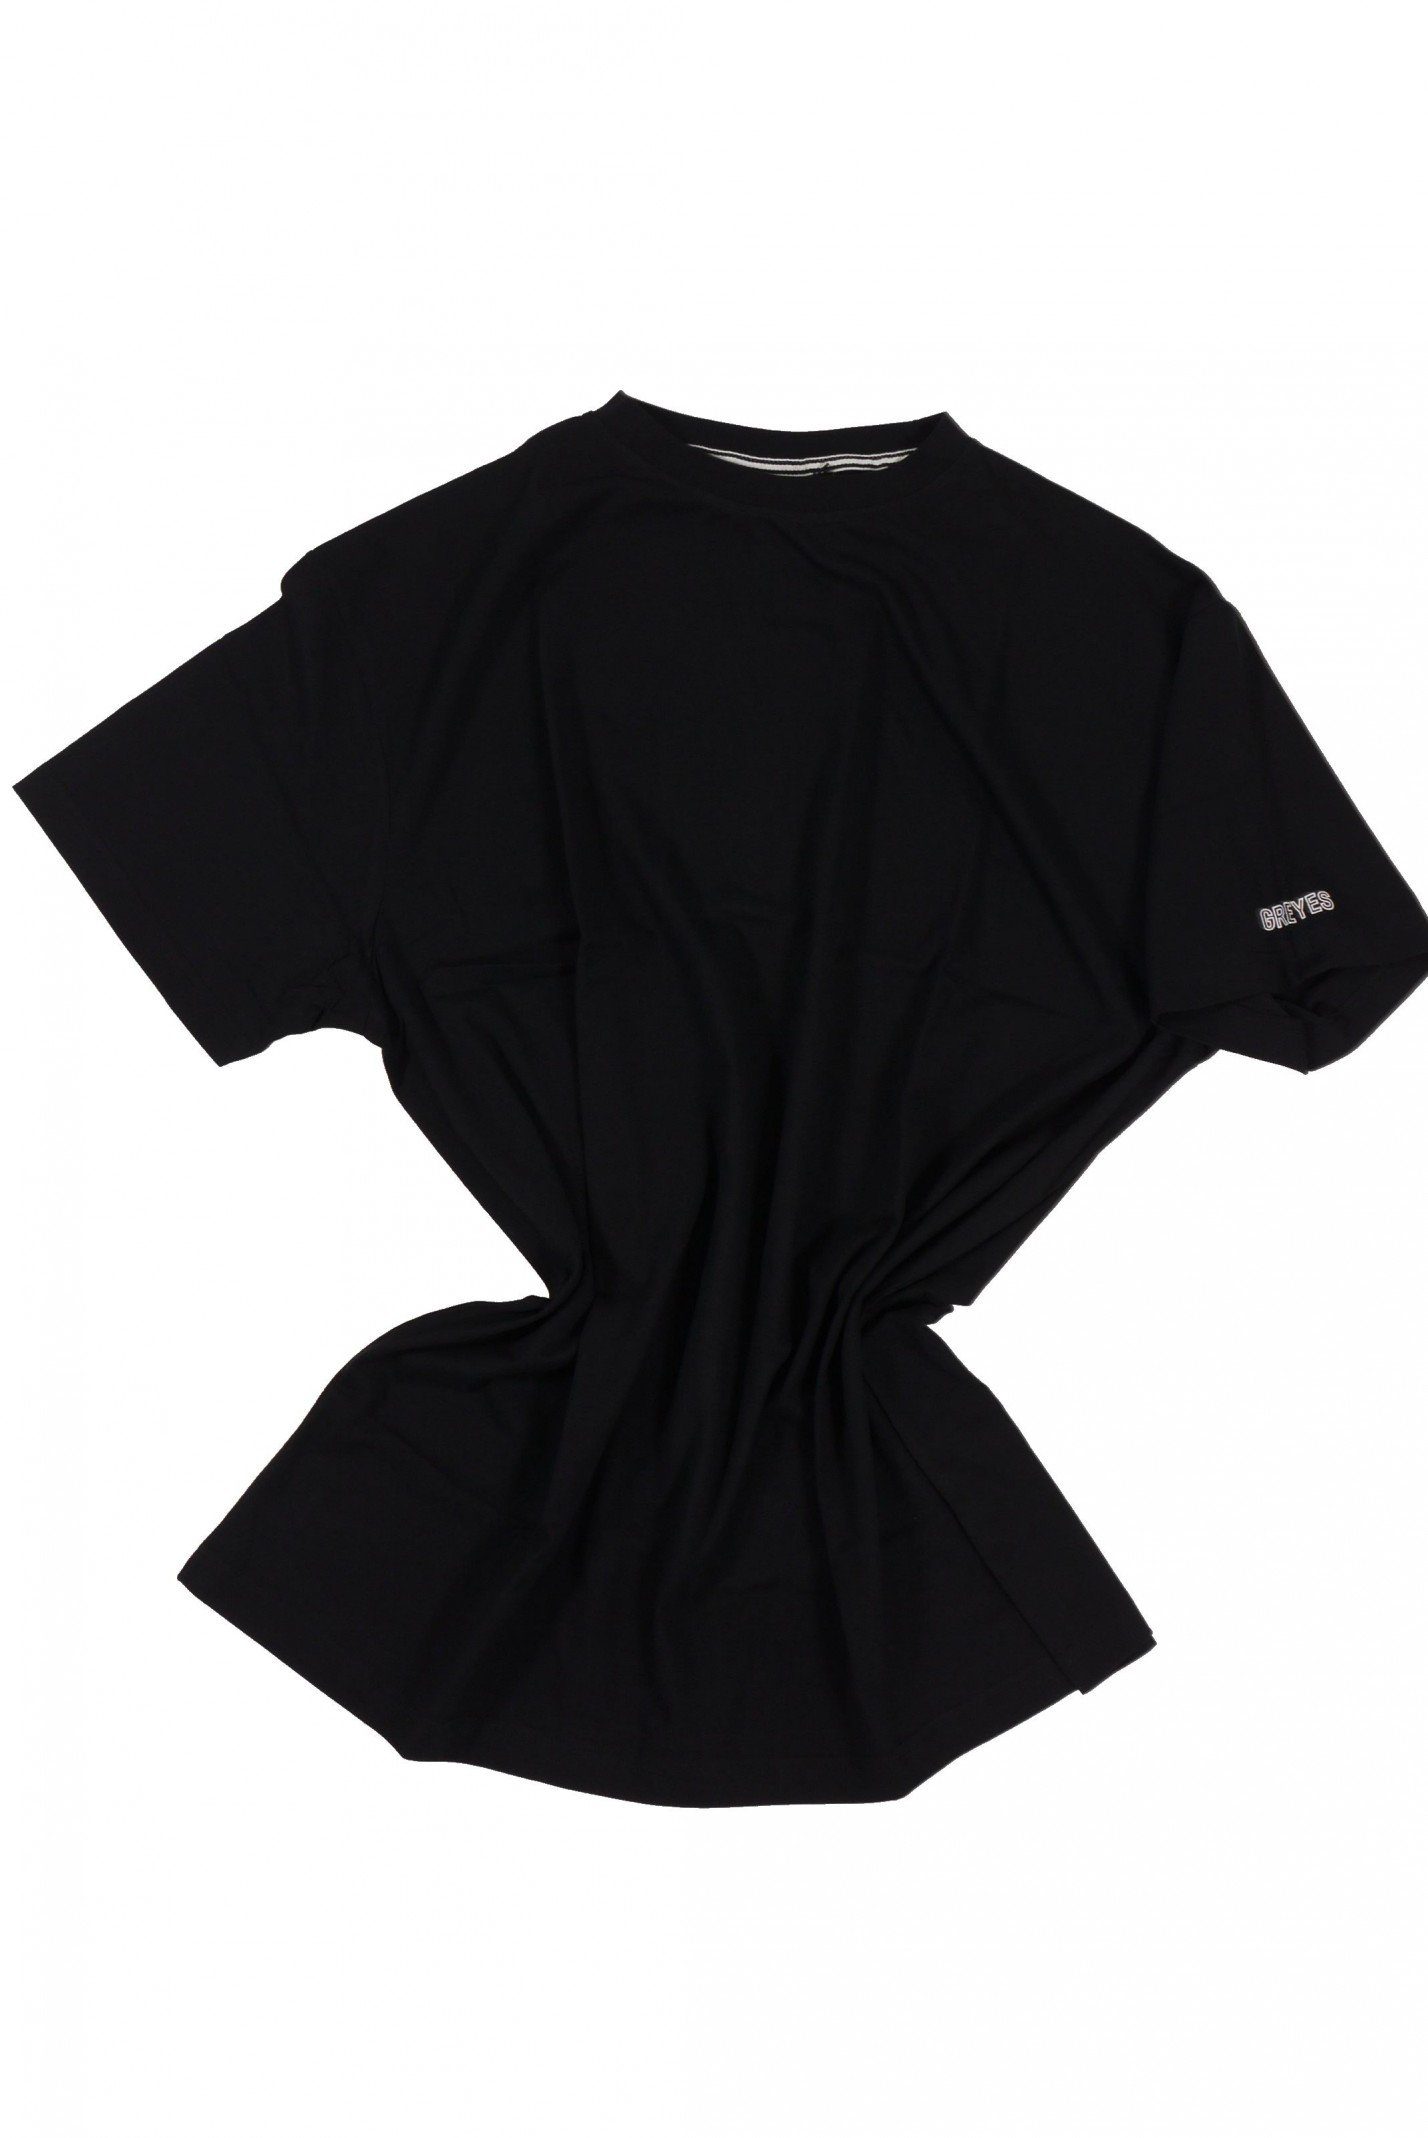 north 56 4 T-Shirt T-Shirt von Allsize in Herrenübergröße bis 8XL, schwarz